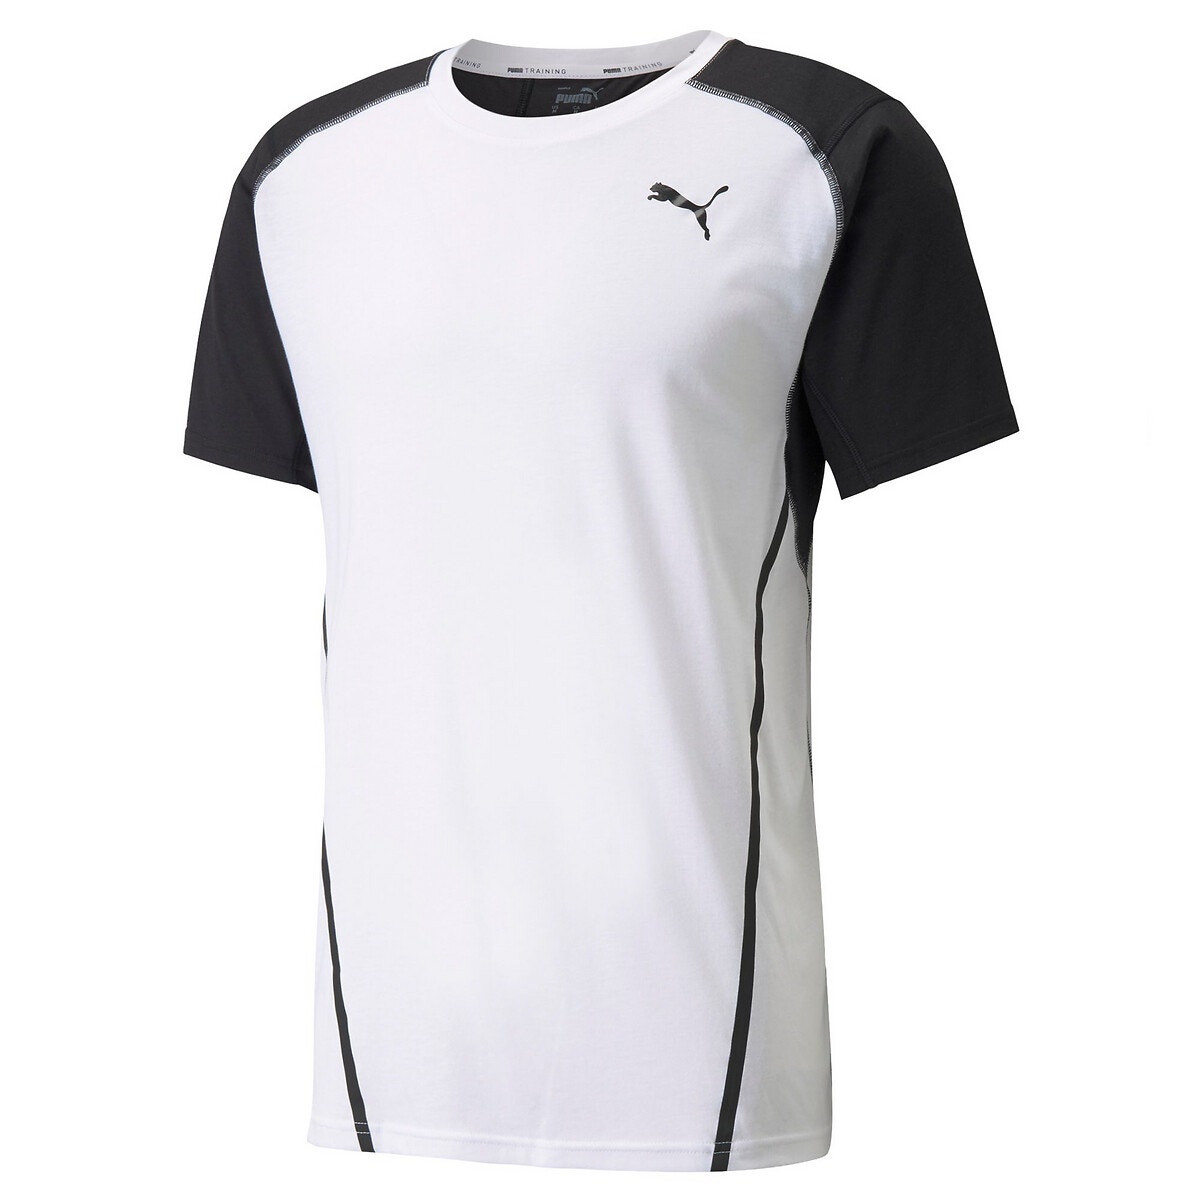 ΑΝΔΡΑΣ | Μπλούζες & Πουκάμισα | T-shirts Κοντομάνικο αθλητικό T-shirt